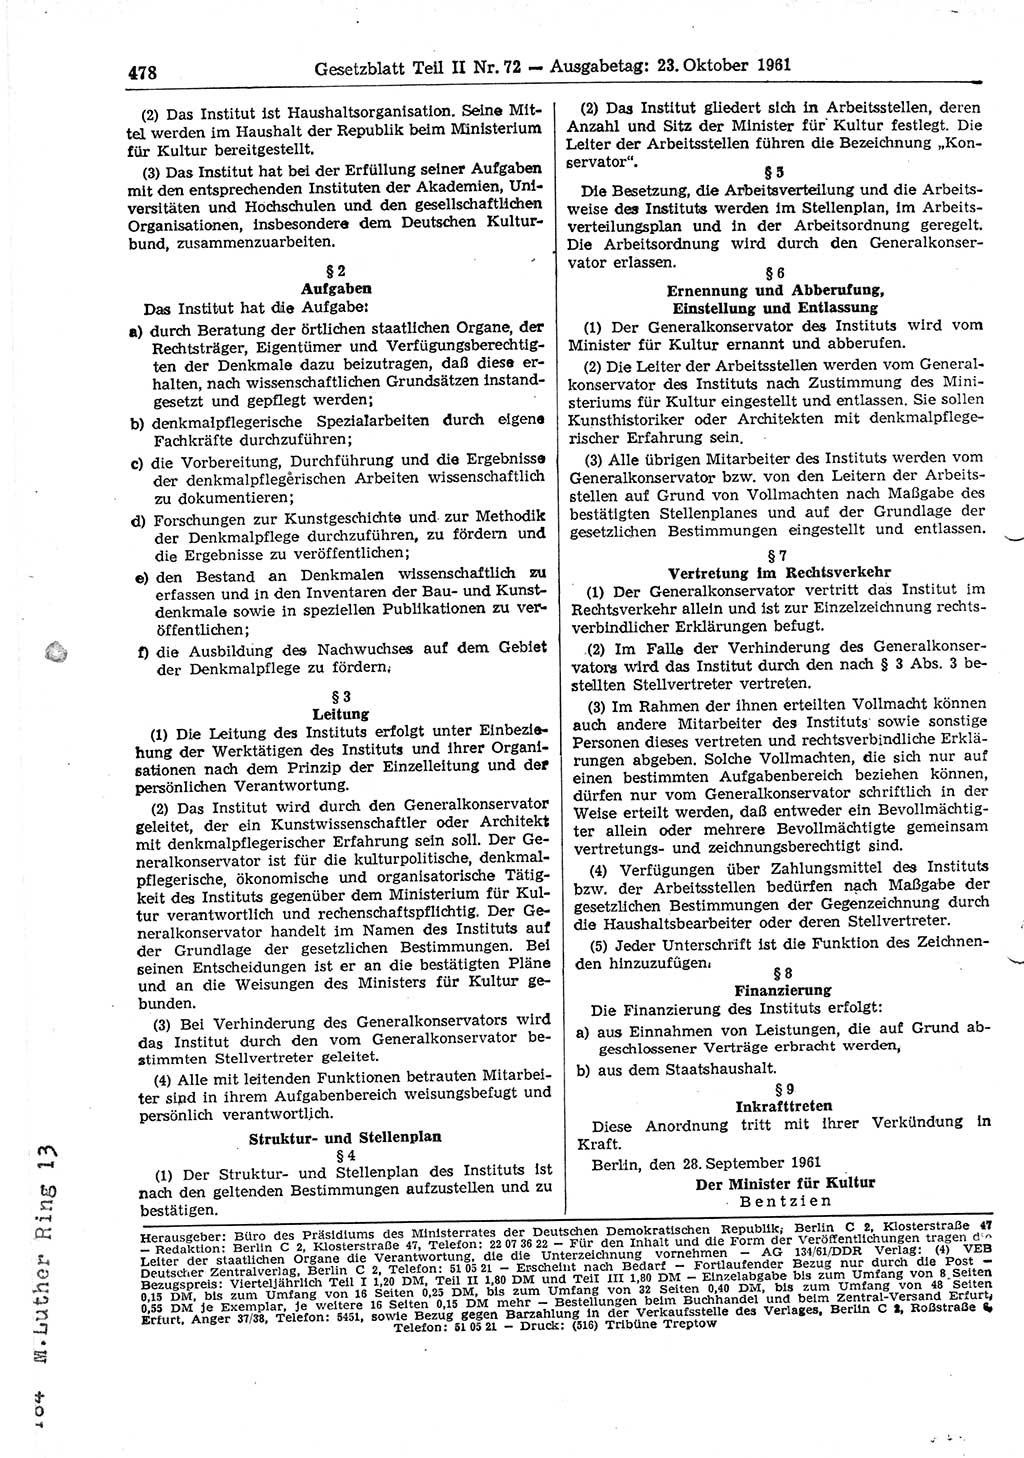 Gesetzblatt (GBl.) der Deutschen Demokratischen Republik (DDR) Teil ⅠⅠ 1961, Seite 478 (GBl. DDR ⅠⅠ 1961, S. 478)